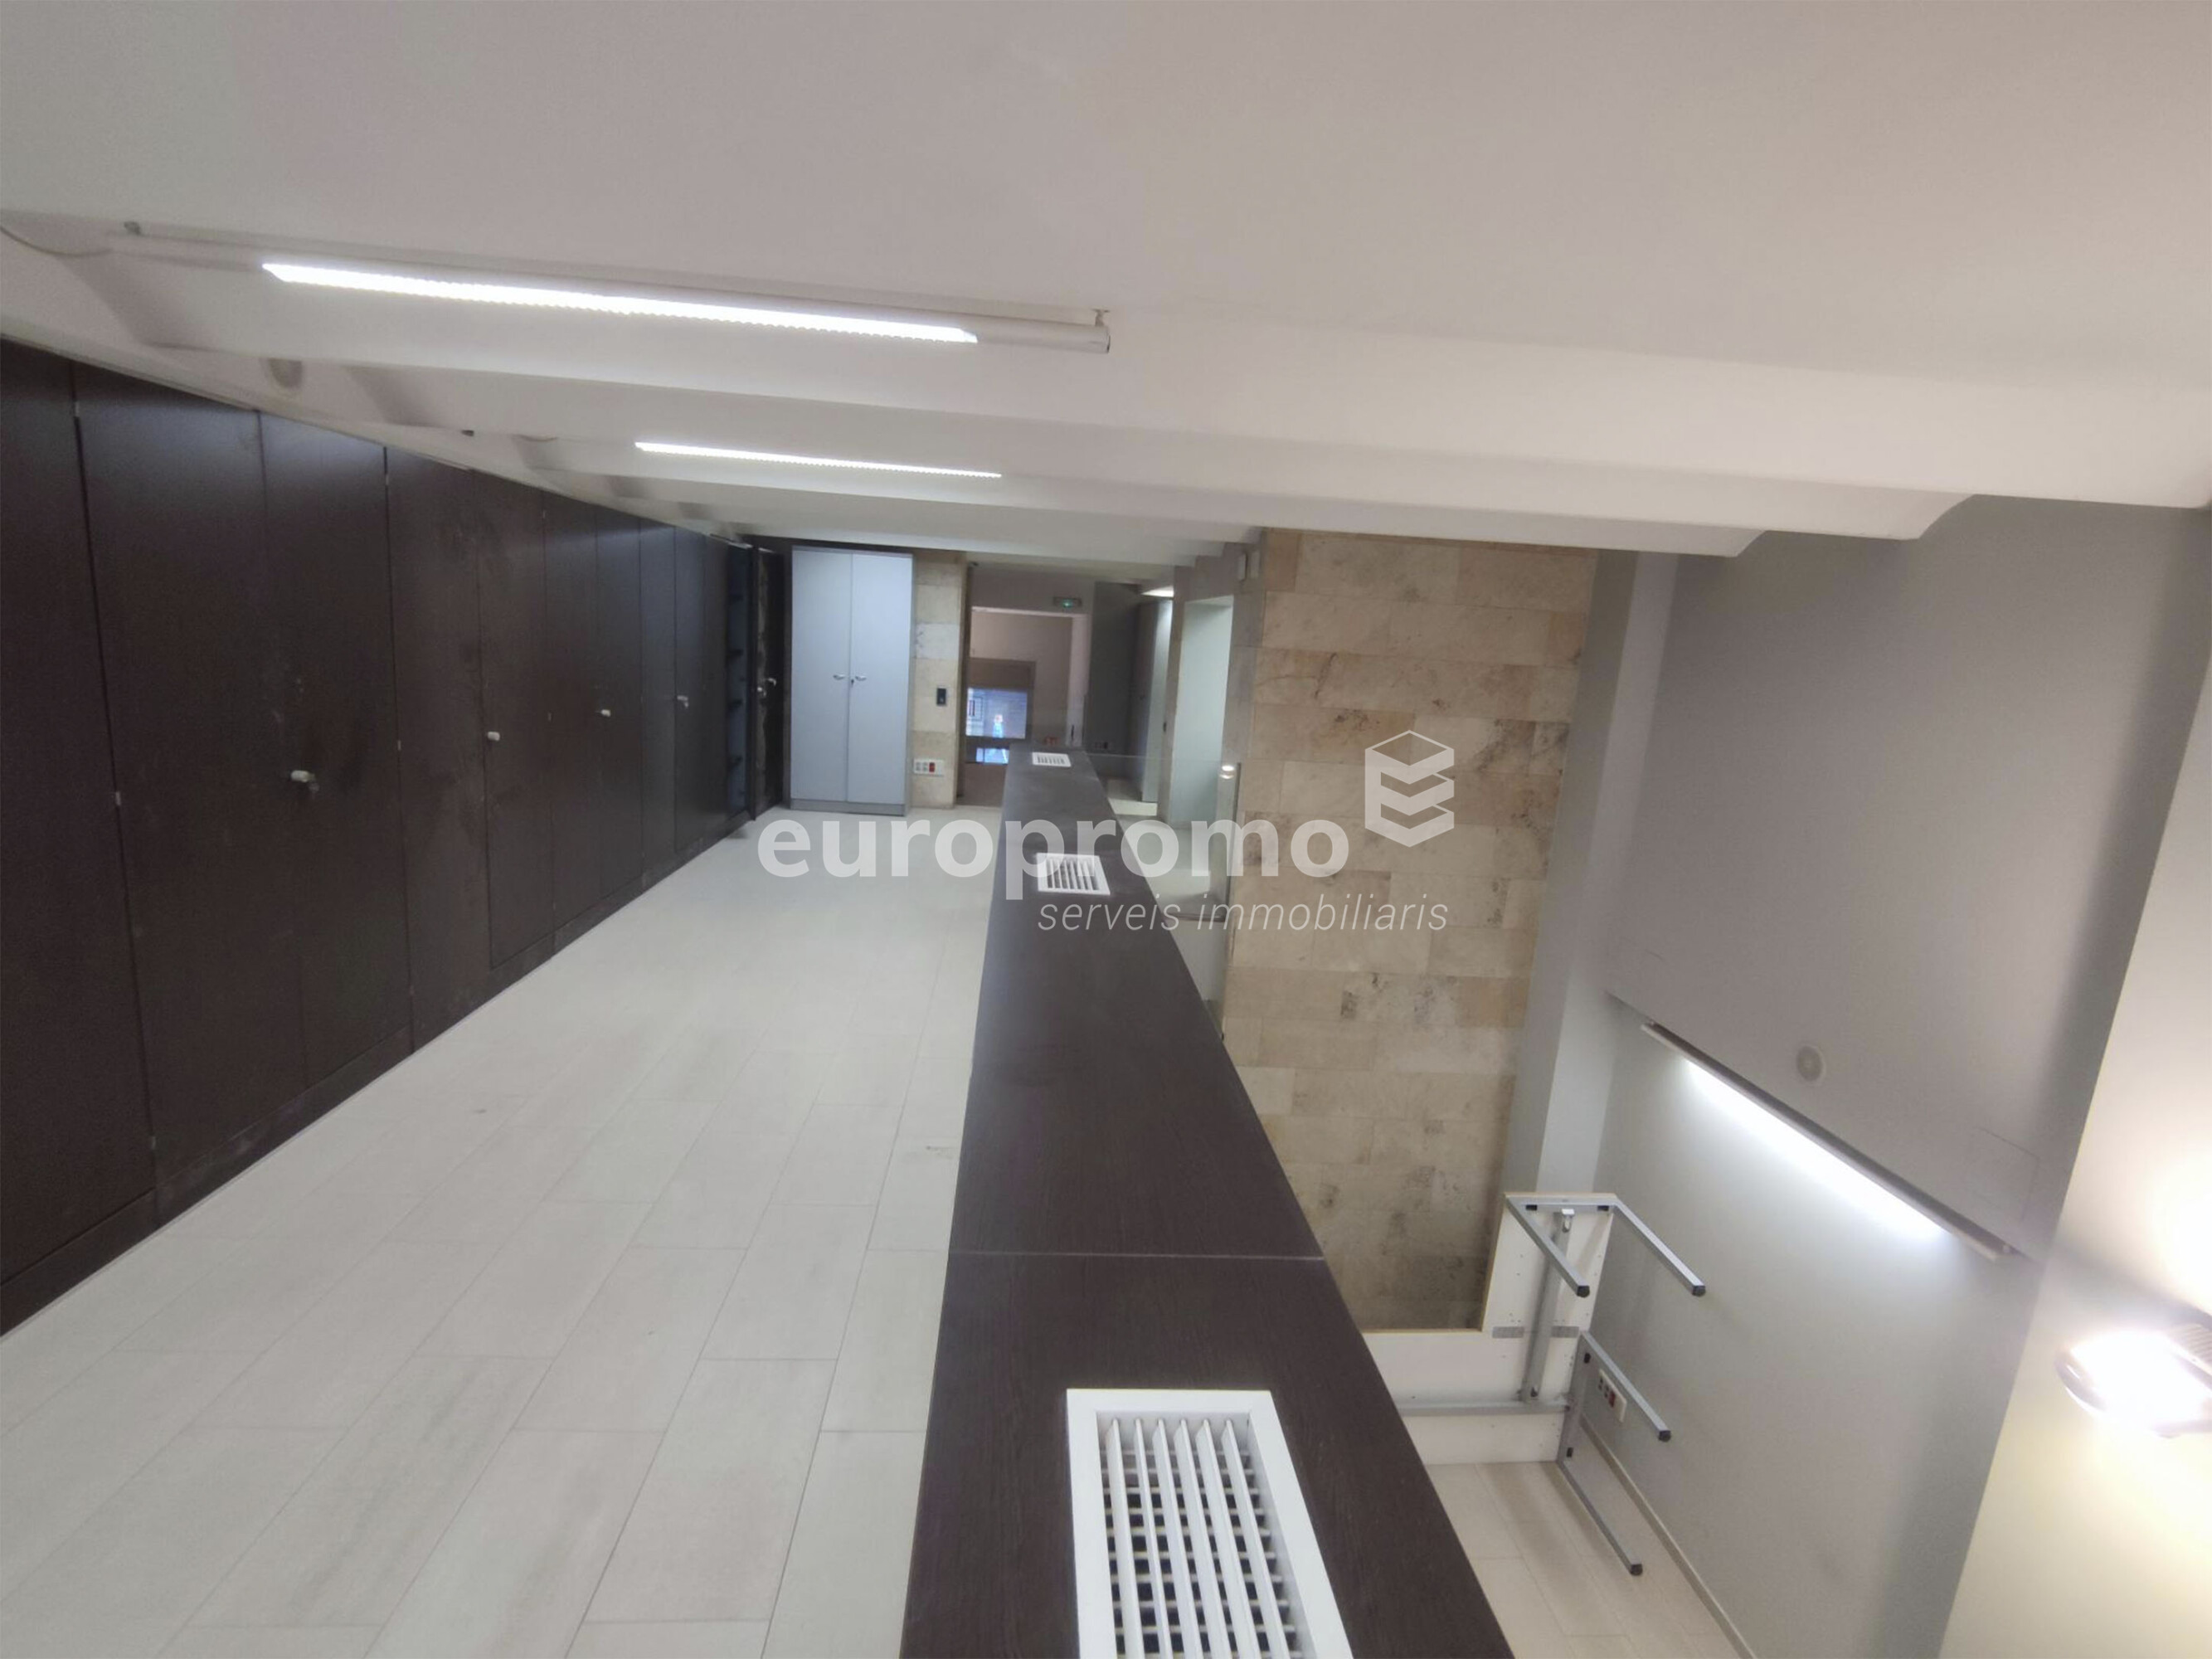 Local  de 400 m2 situado en el centro de Girona!